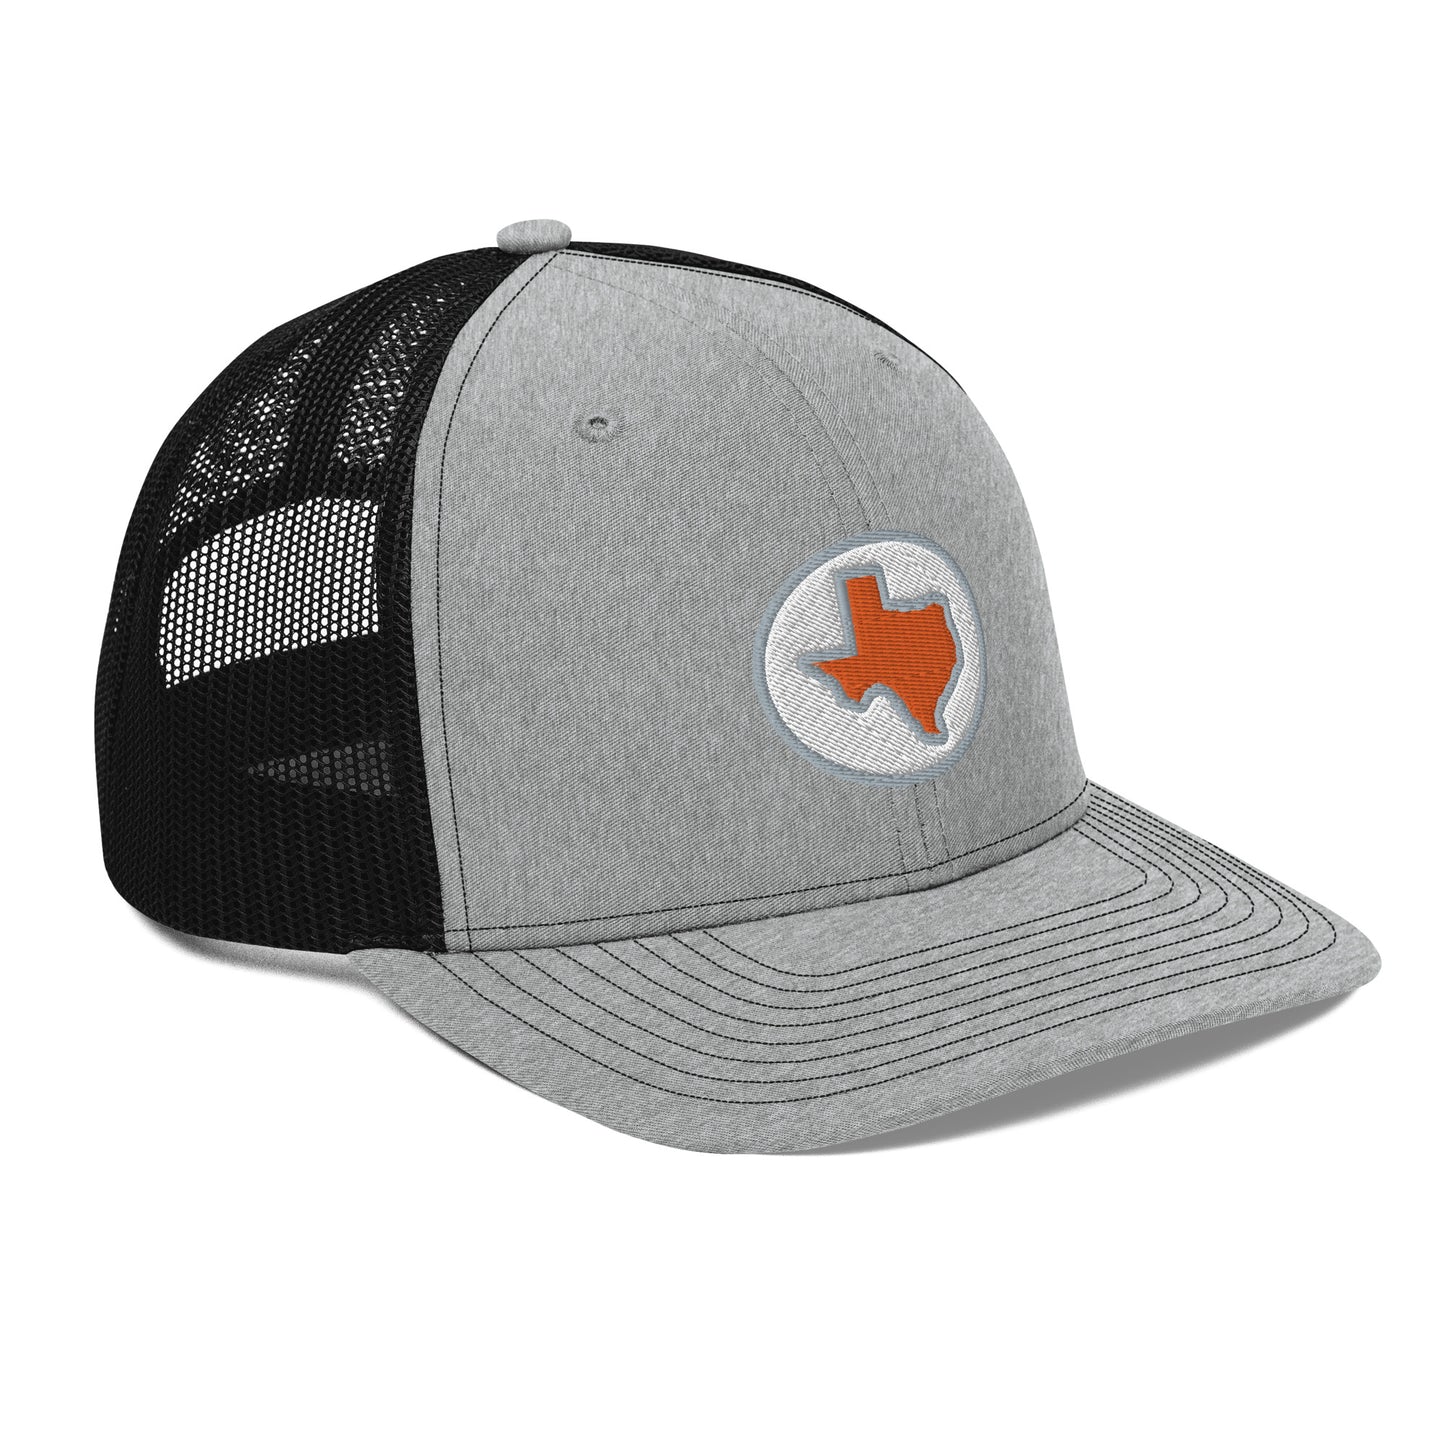 Grey Austin Texas Circle Trucker Cap